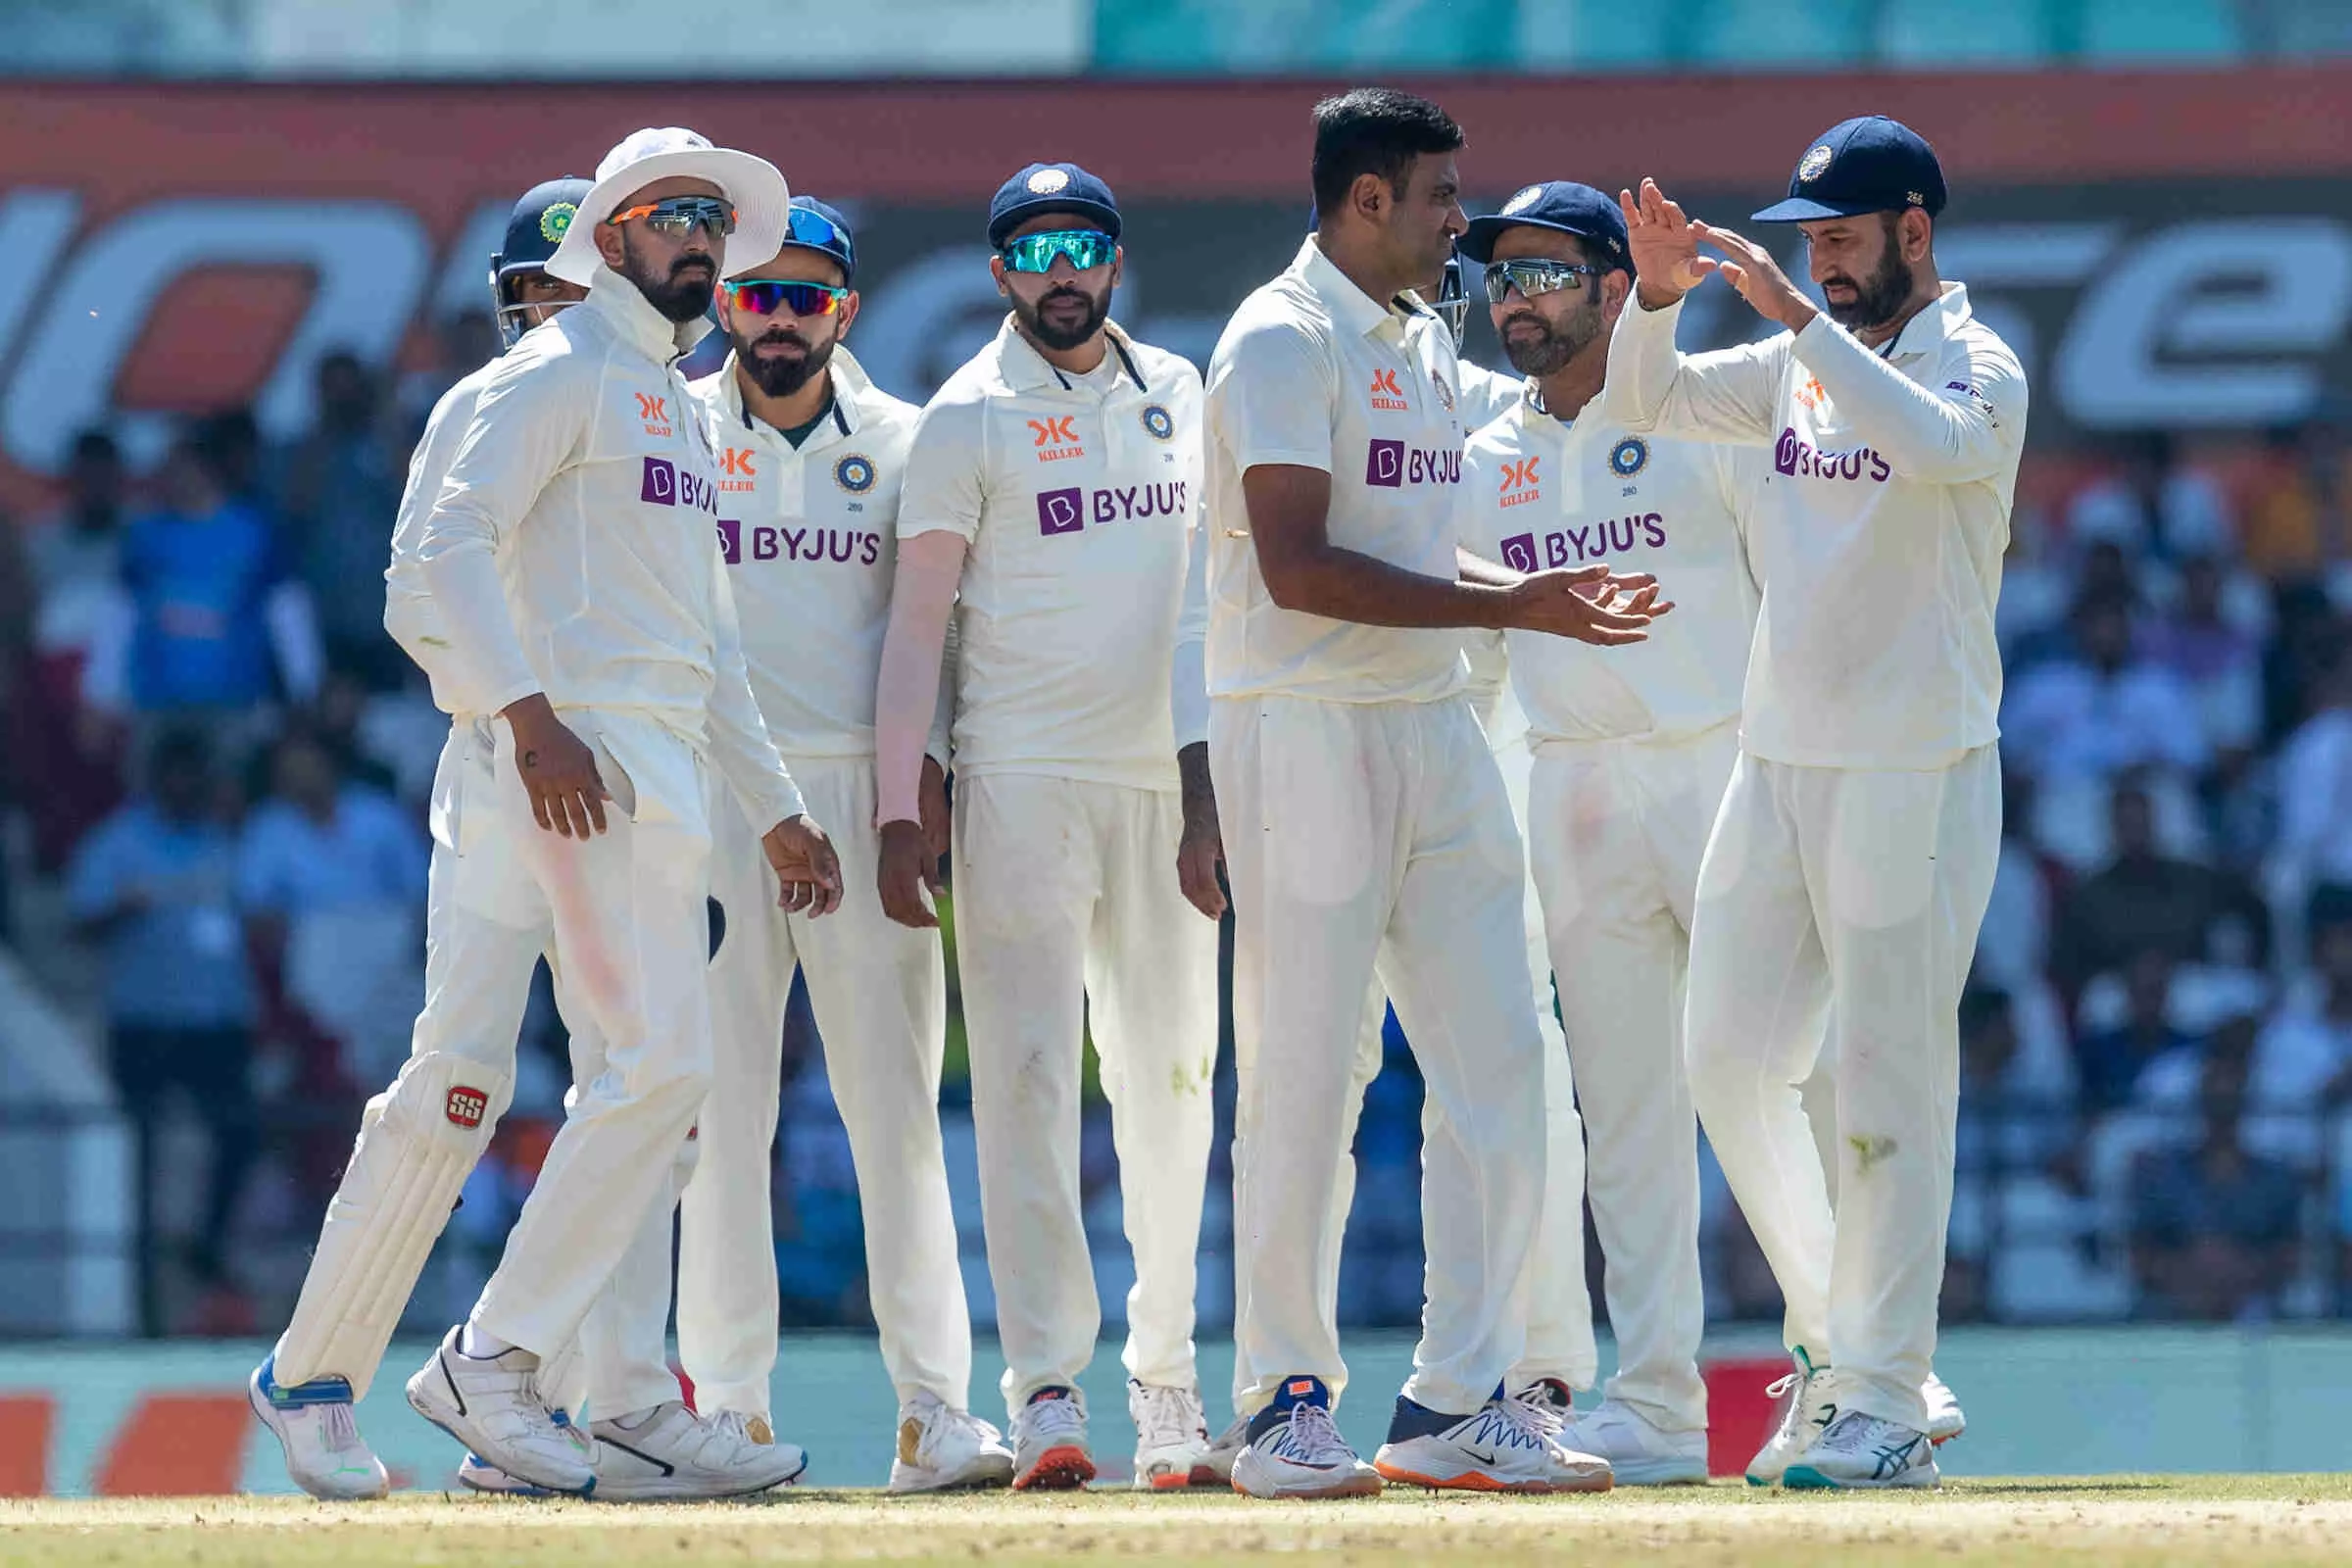 INDvsAUS : ऑस्ट्रेलिया के खिलाफ बड़ी जीत के बावजूद टीम इंडिया में दूसरे टेस्ट से बाहर हुआ ये धुरंधर खिलाडी